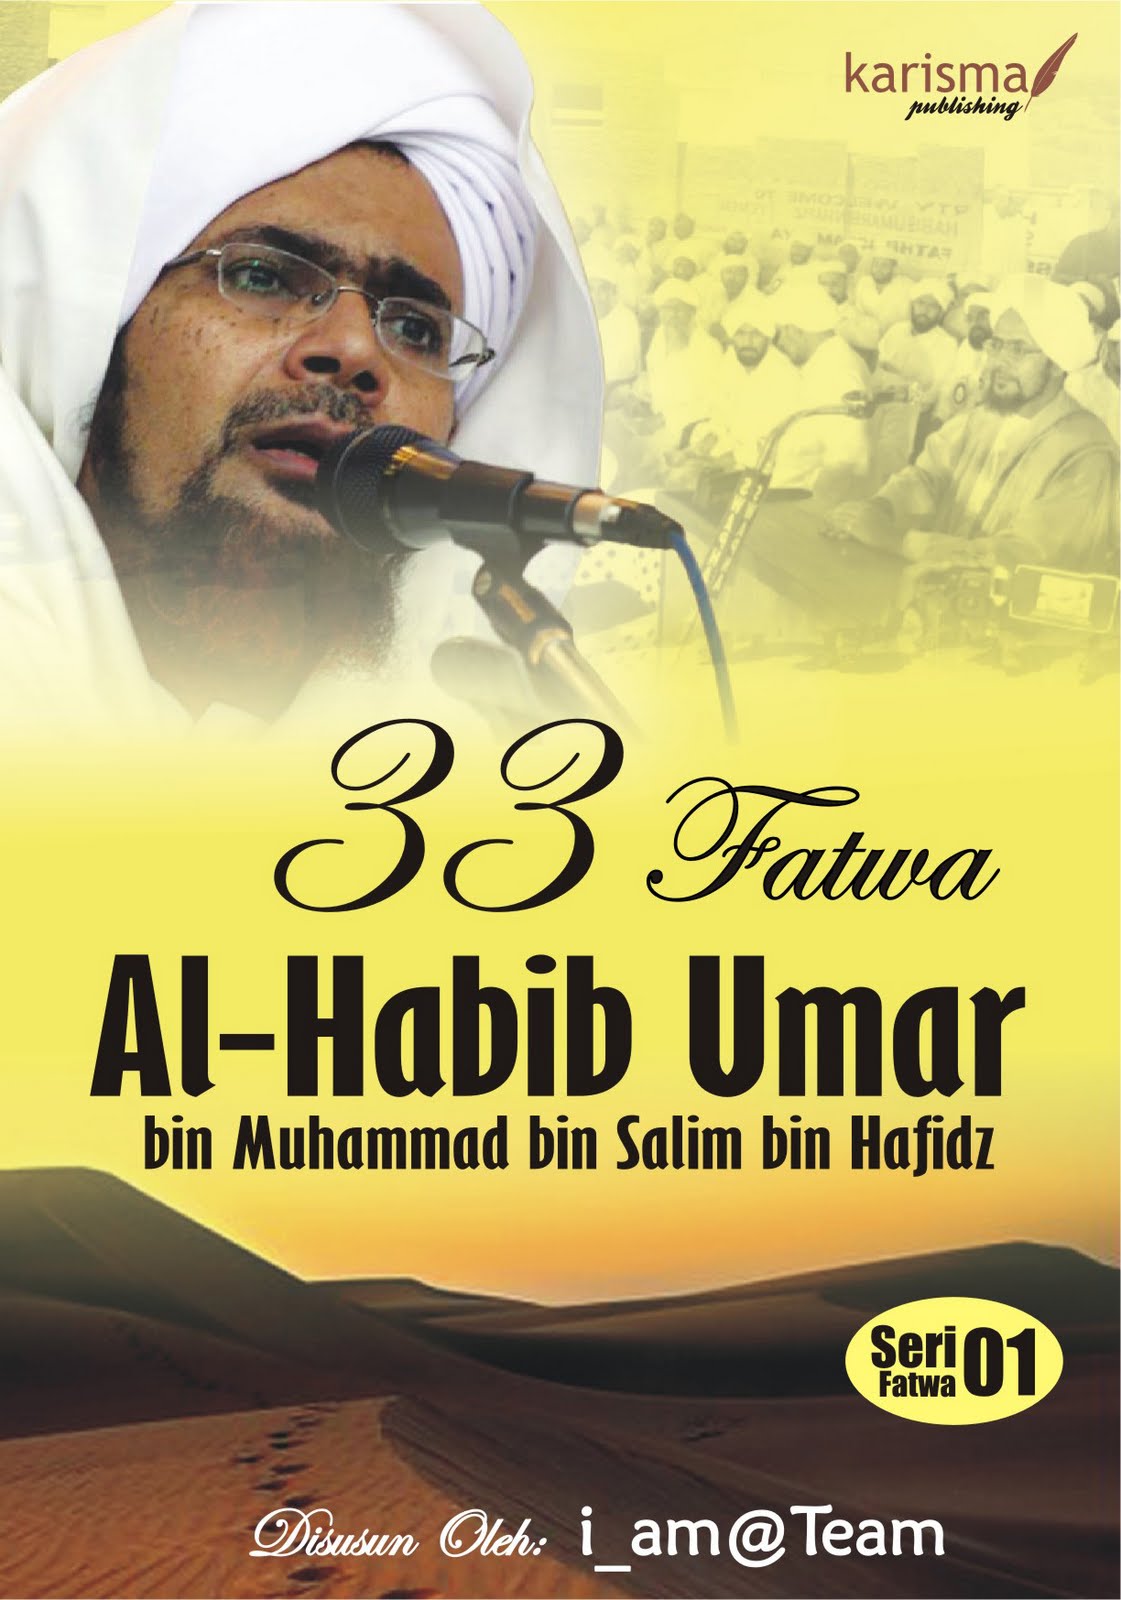 33 Fatwa Habib Umar bin Hafidz  Kecintaan dan Kasih 